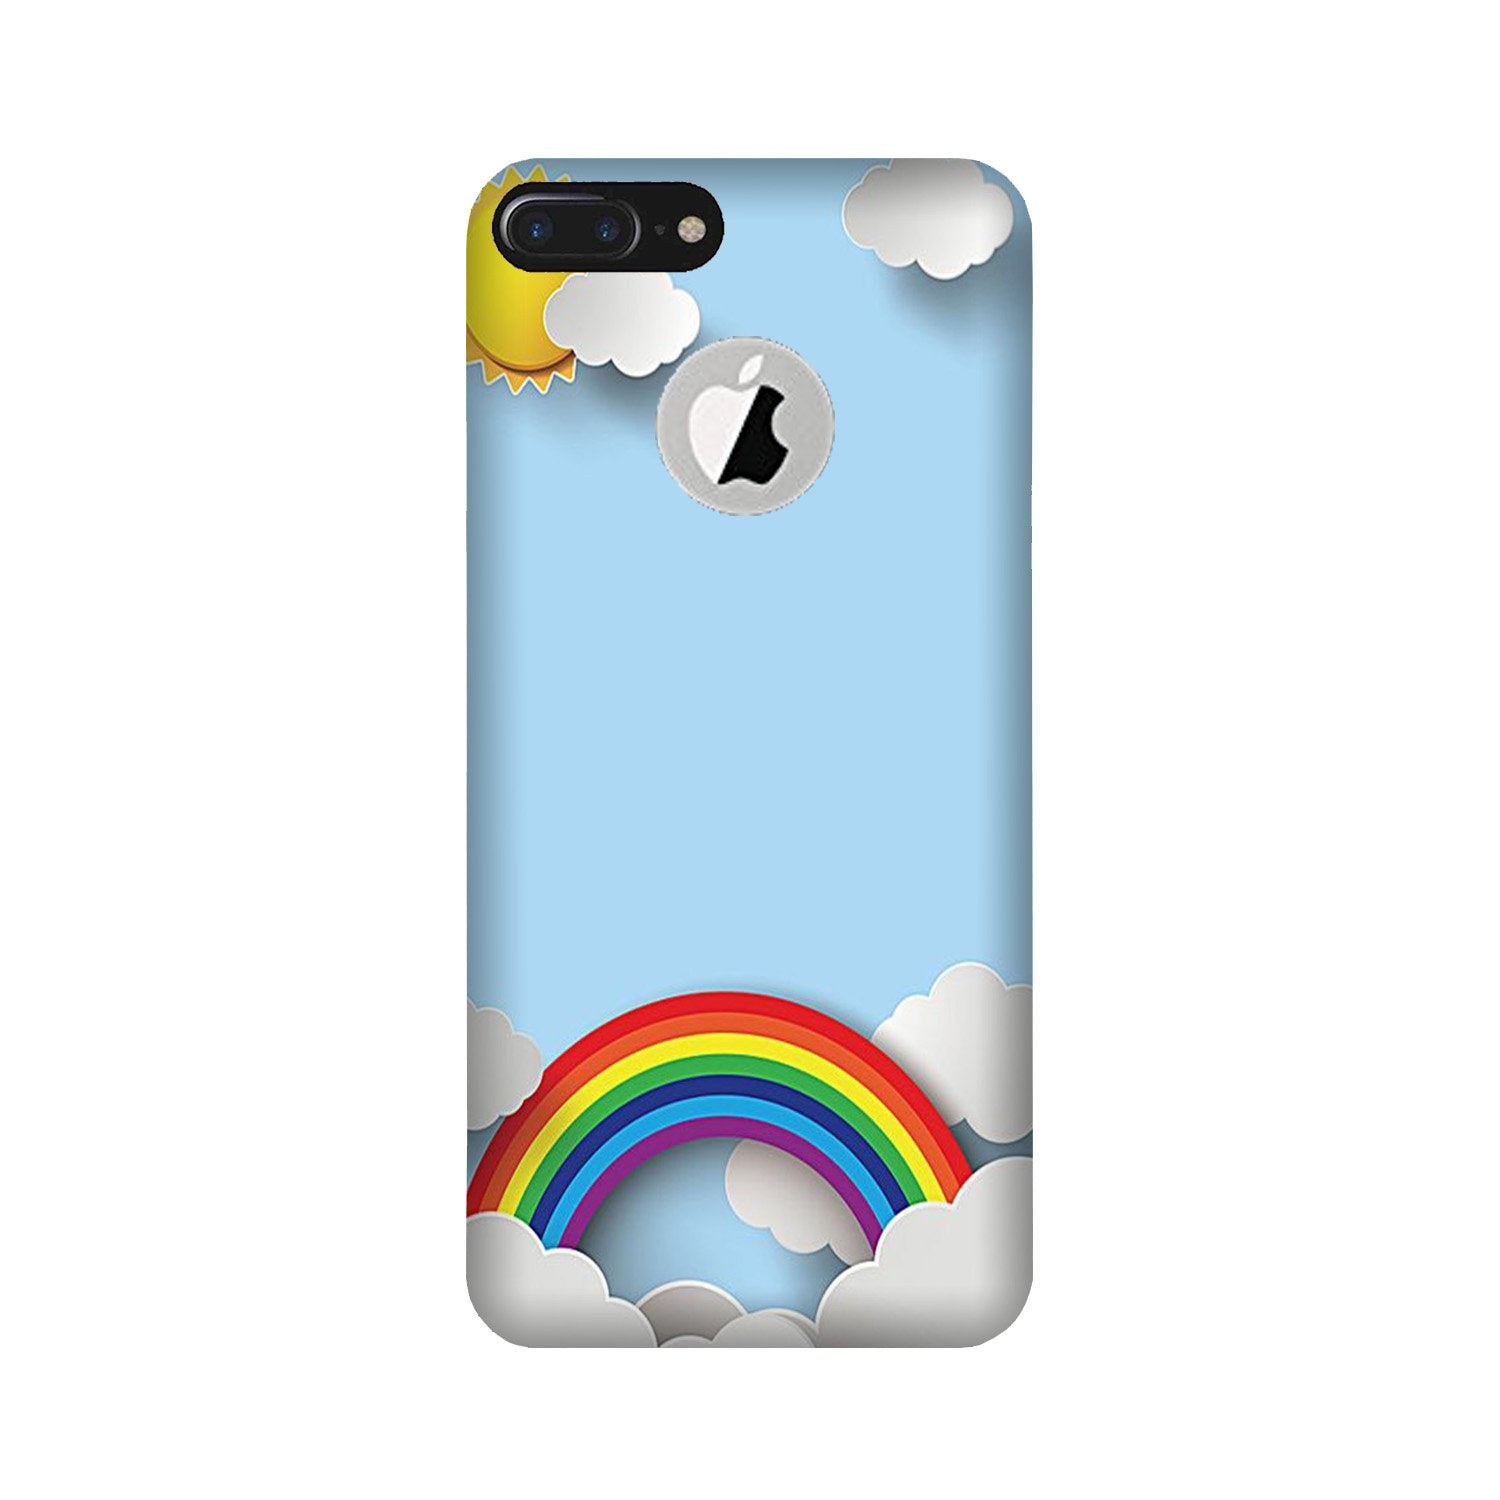 Rainbow Case for iPhone 7 Plus logo cut (Design No. 225)